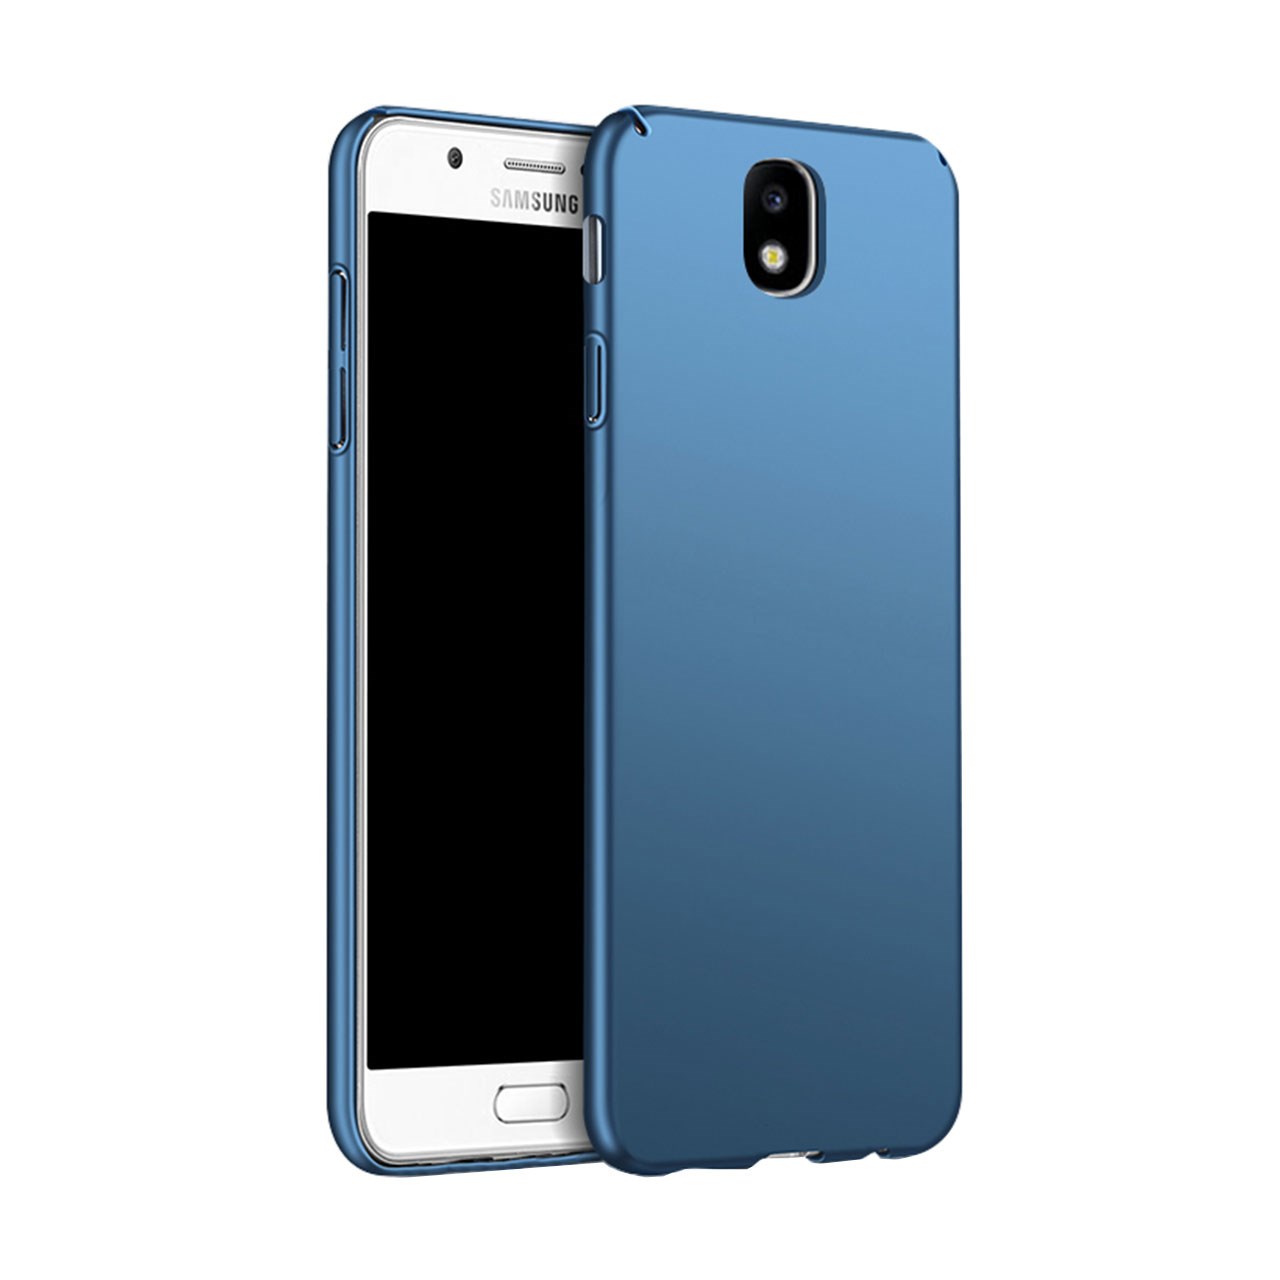 کاور  آیپکی مدل Hard Case مناسب برای گوشی Samsung Galaxy J5 Pro